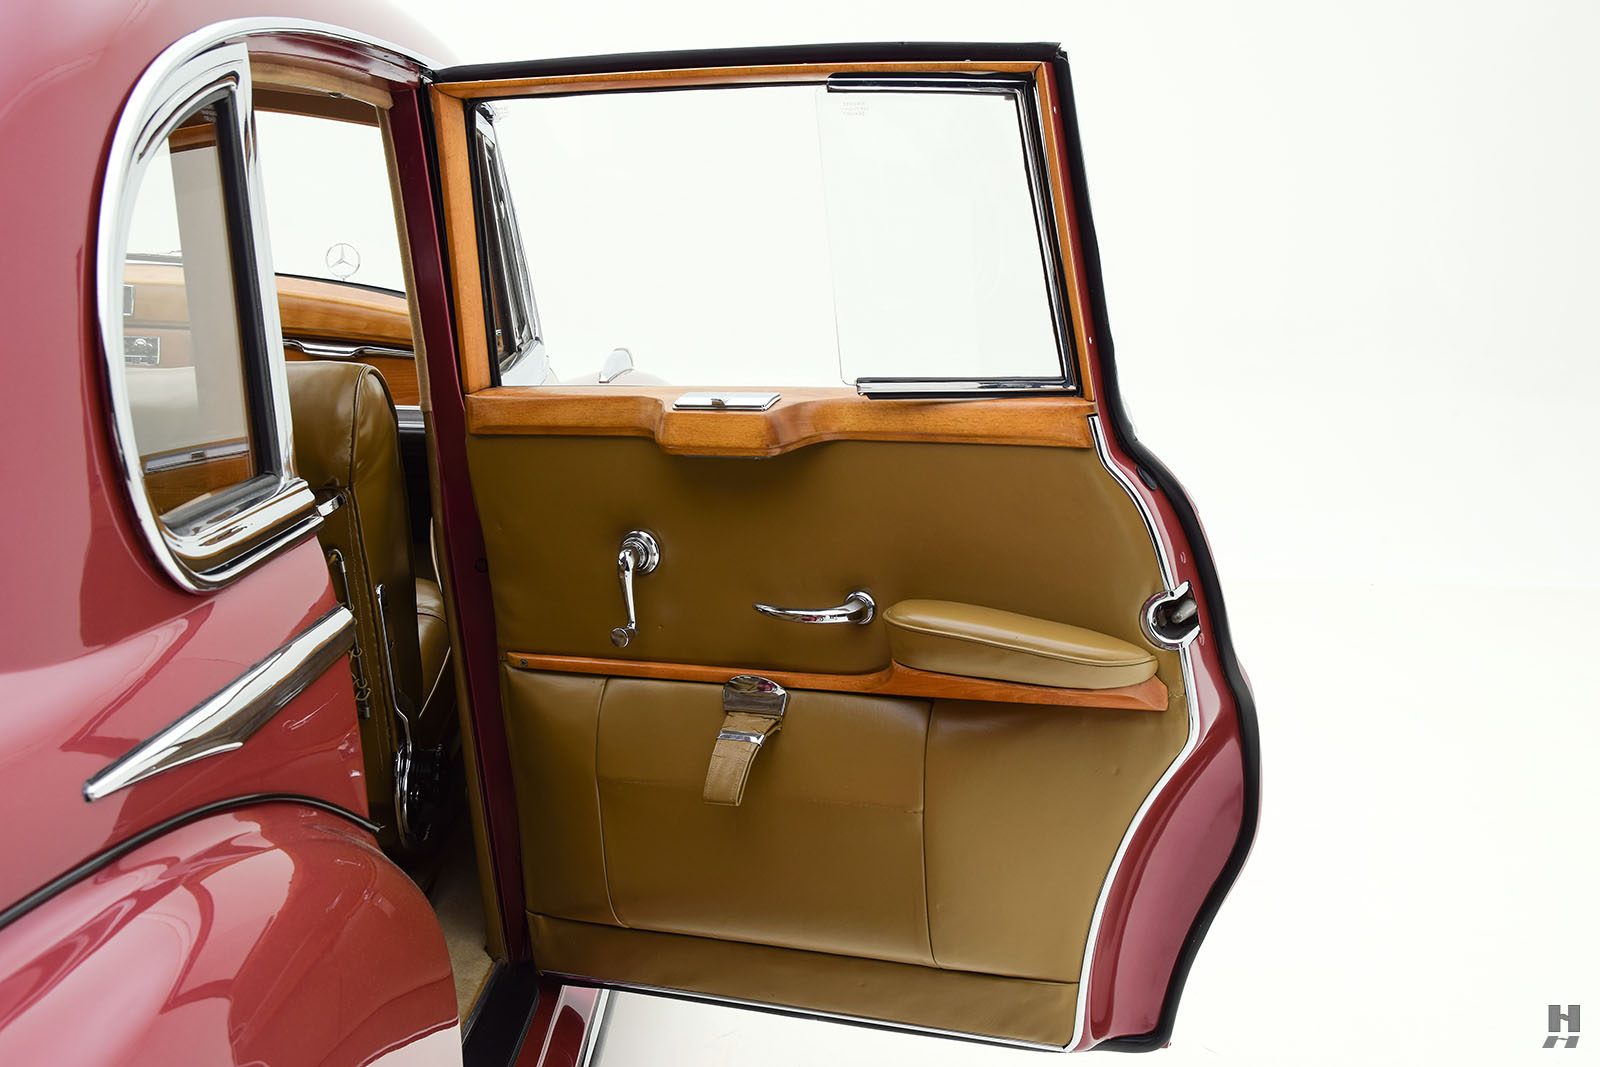 1956 mercedes-benz 300c